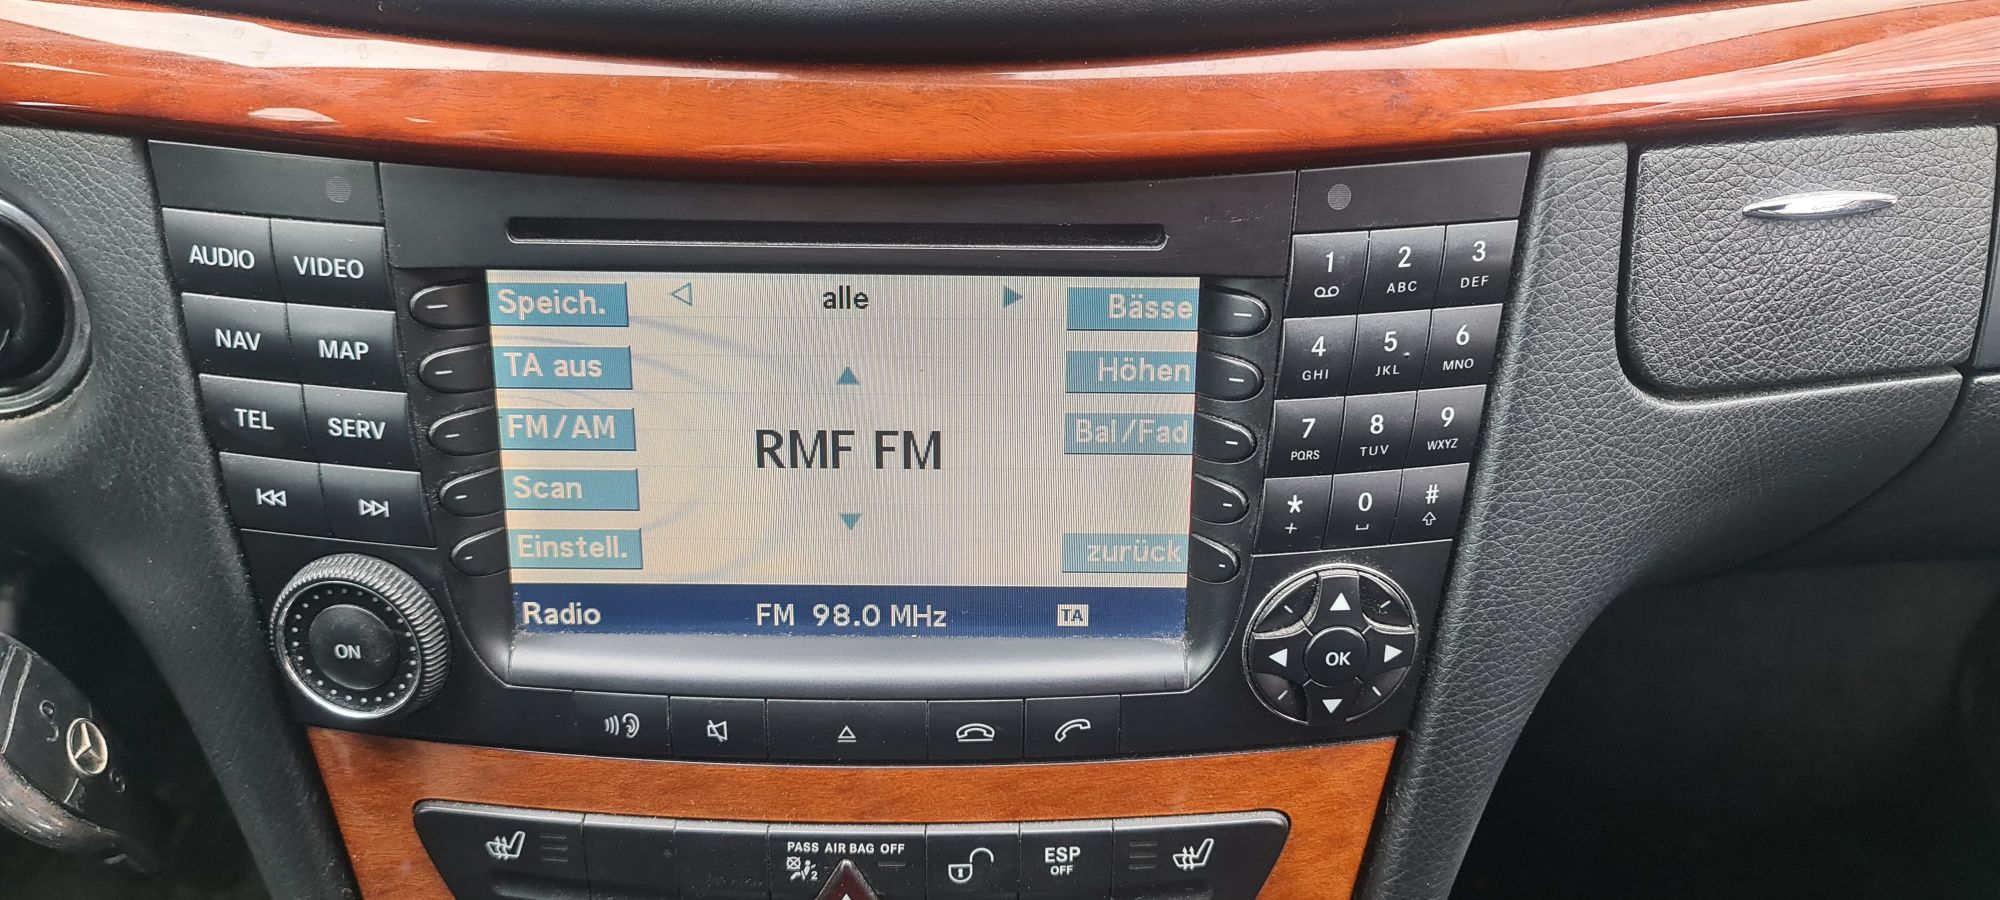 Radio Duża Navi Comand Mercedes W211 W219 Nawigacja